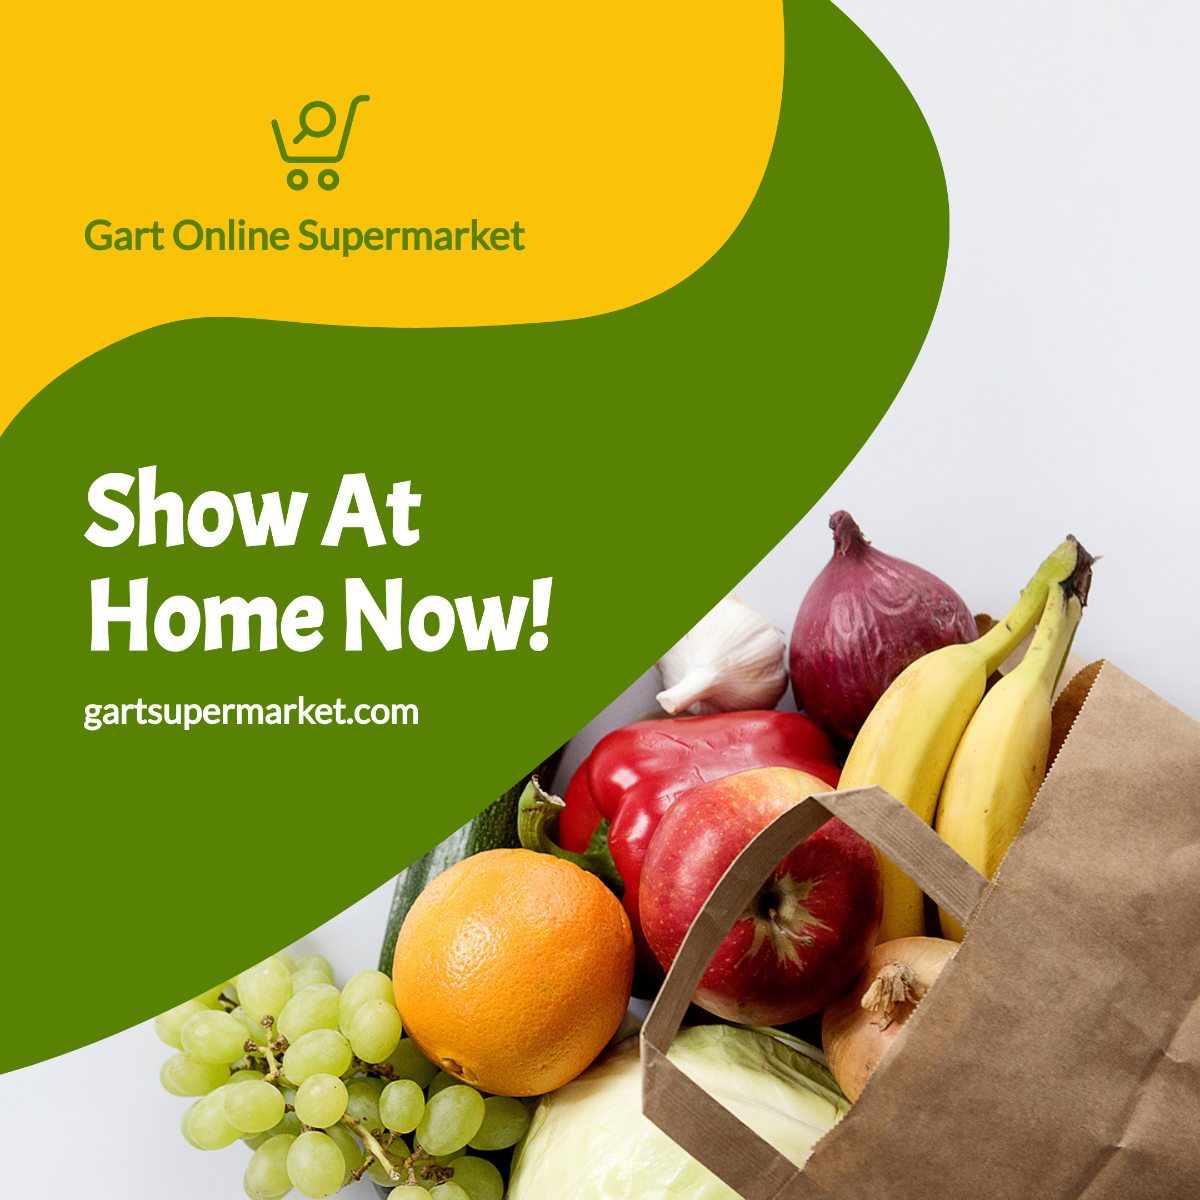 Online Supermarket